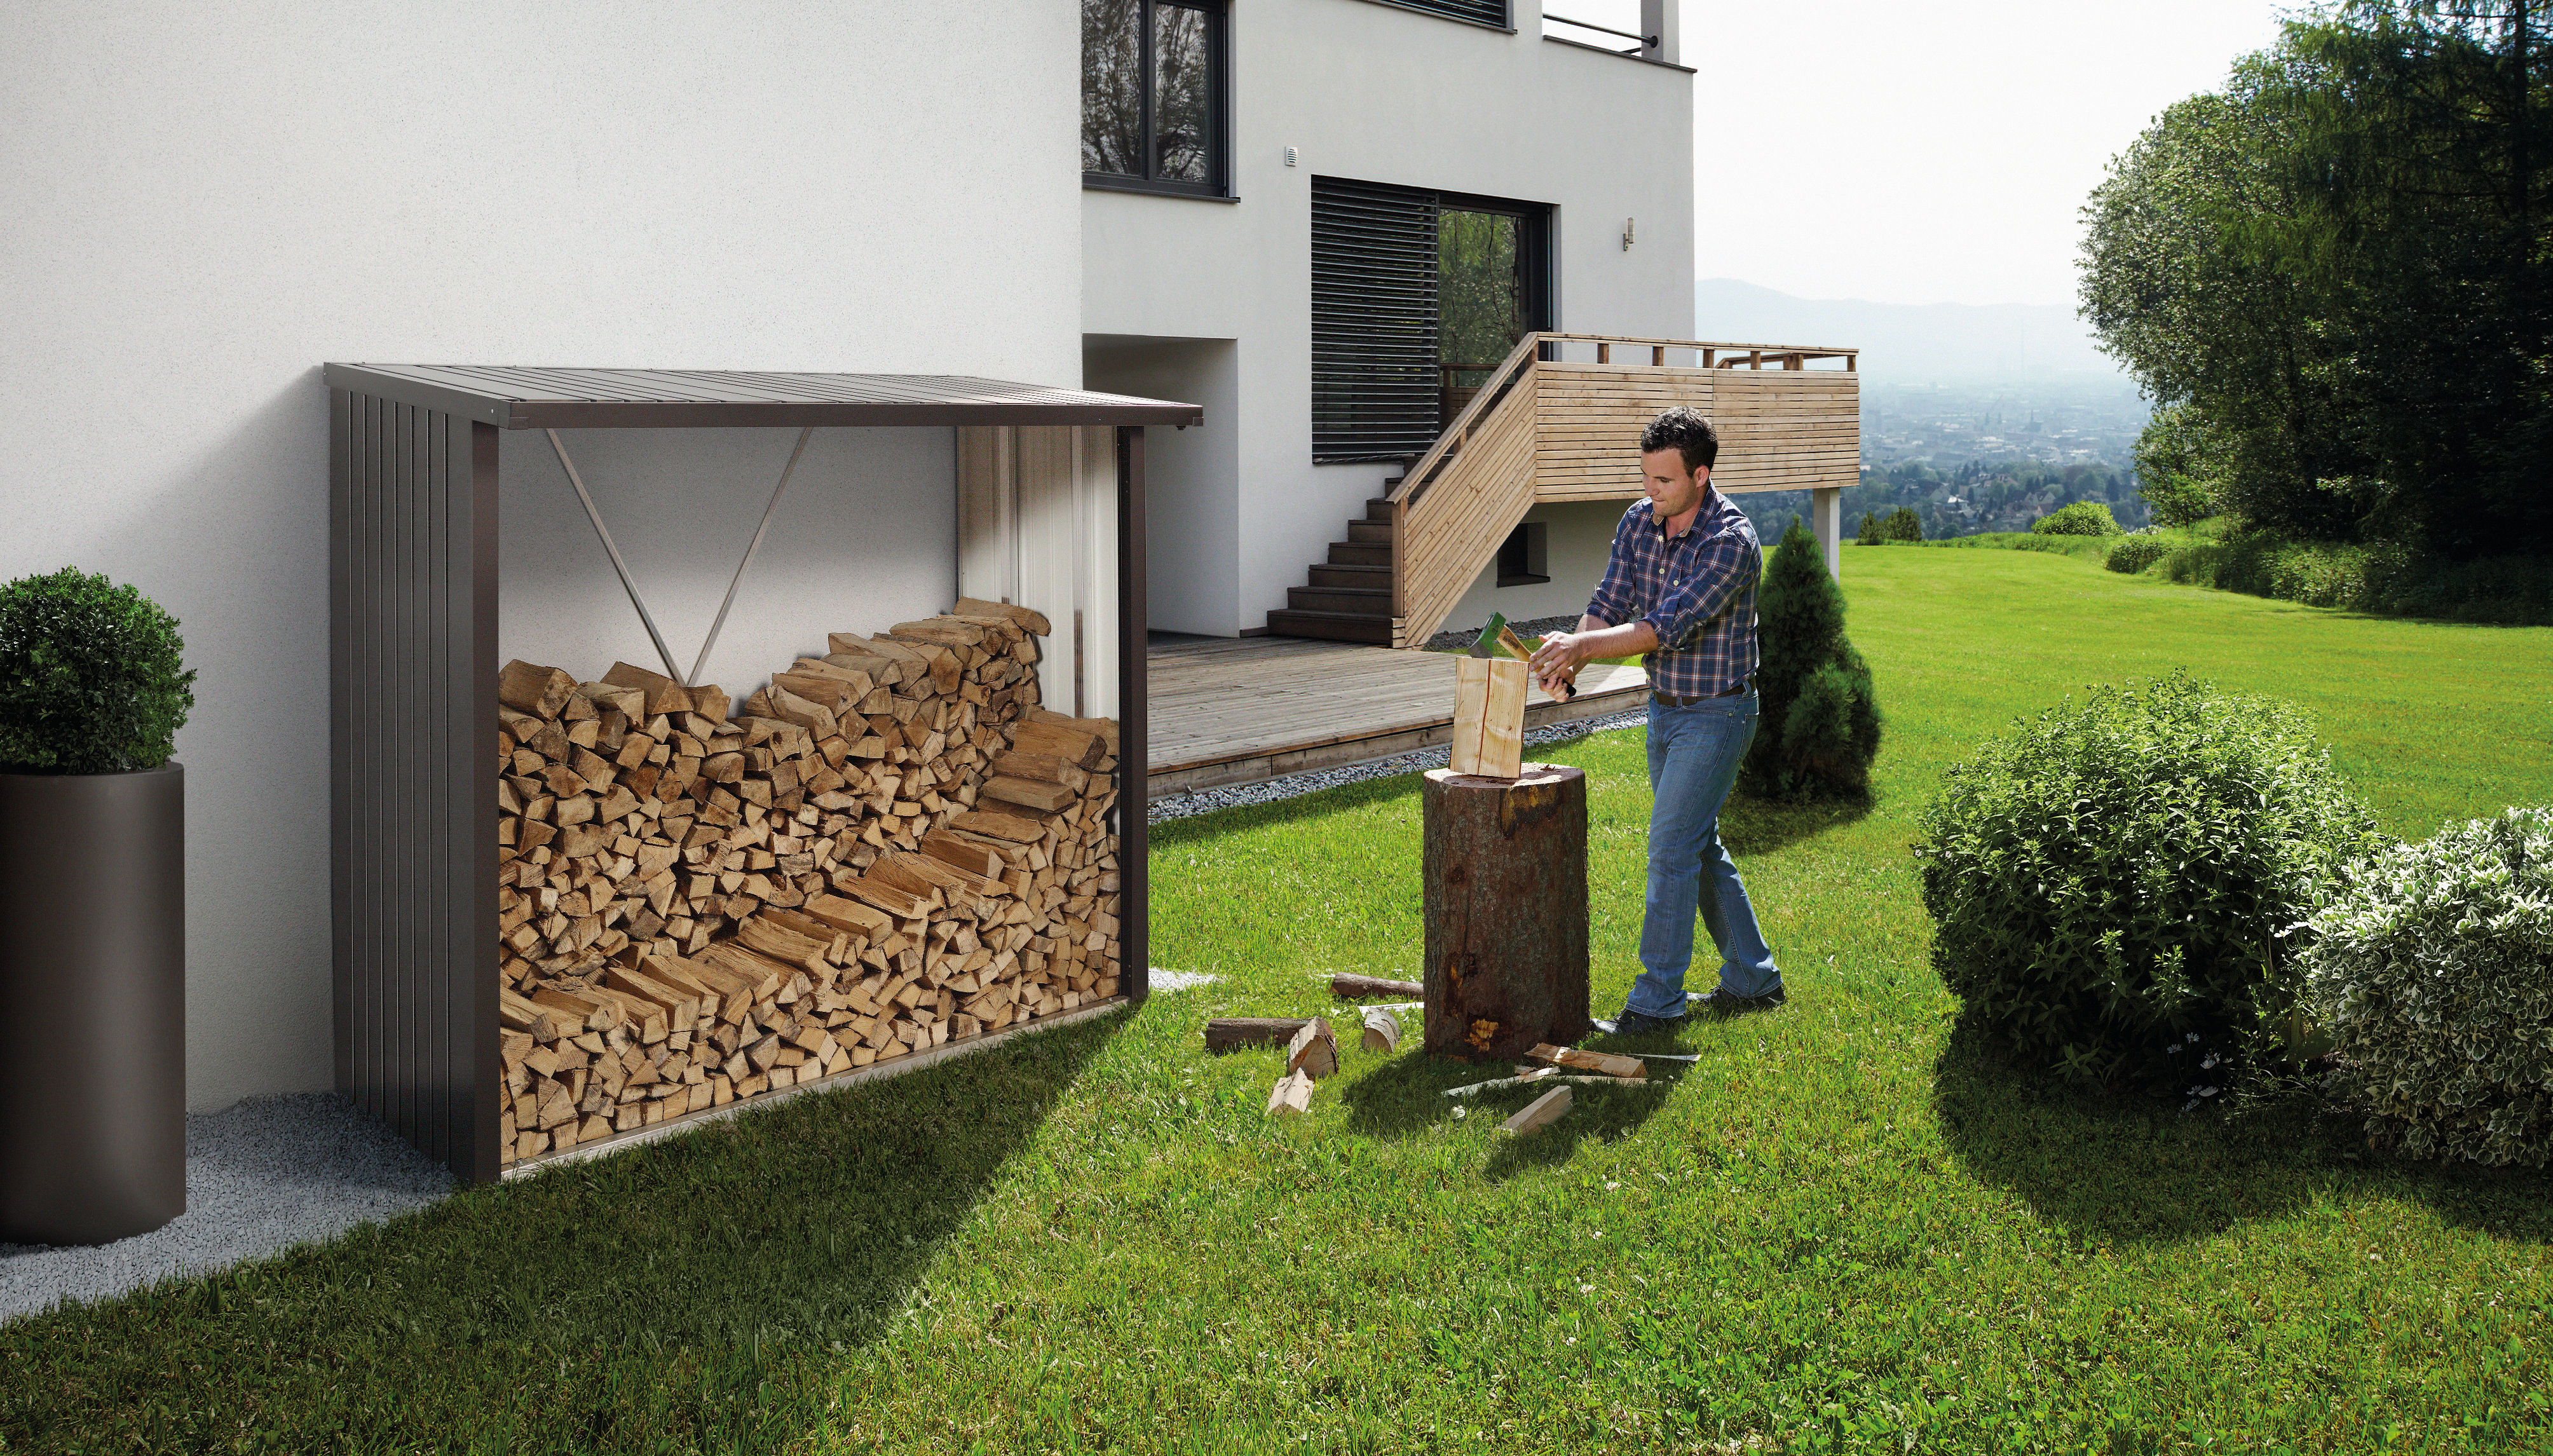 Brennholzregal aus Metall von Biohort gefüllt mit Brennholz vor einer Hauswand